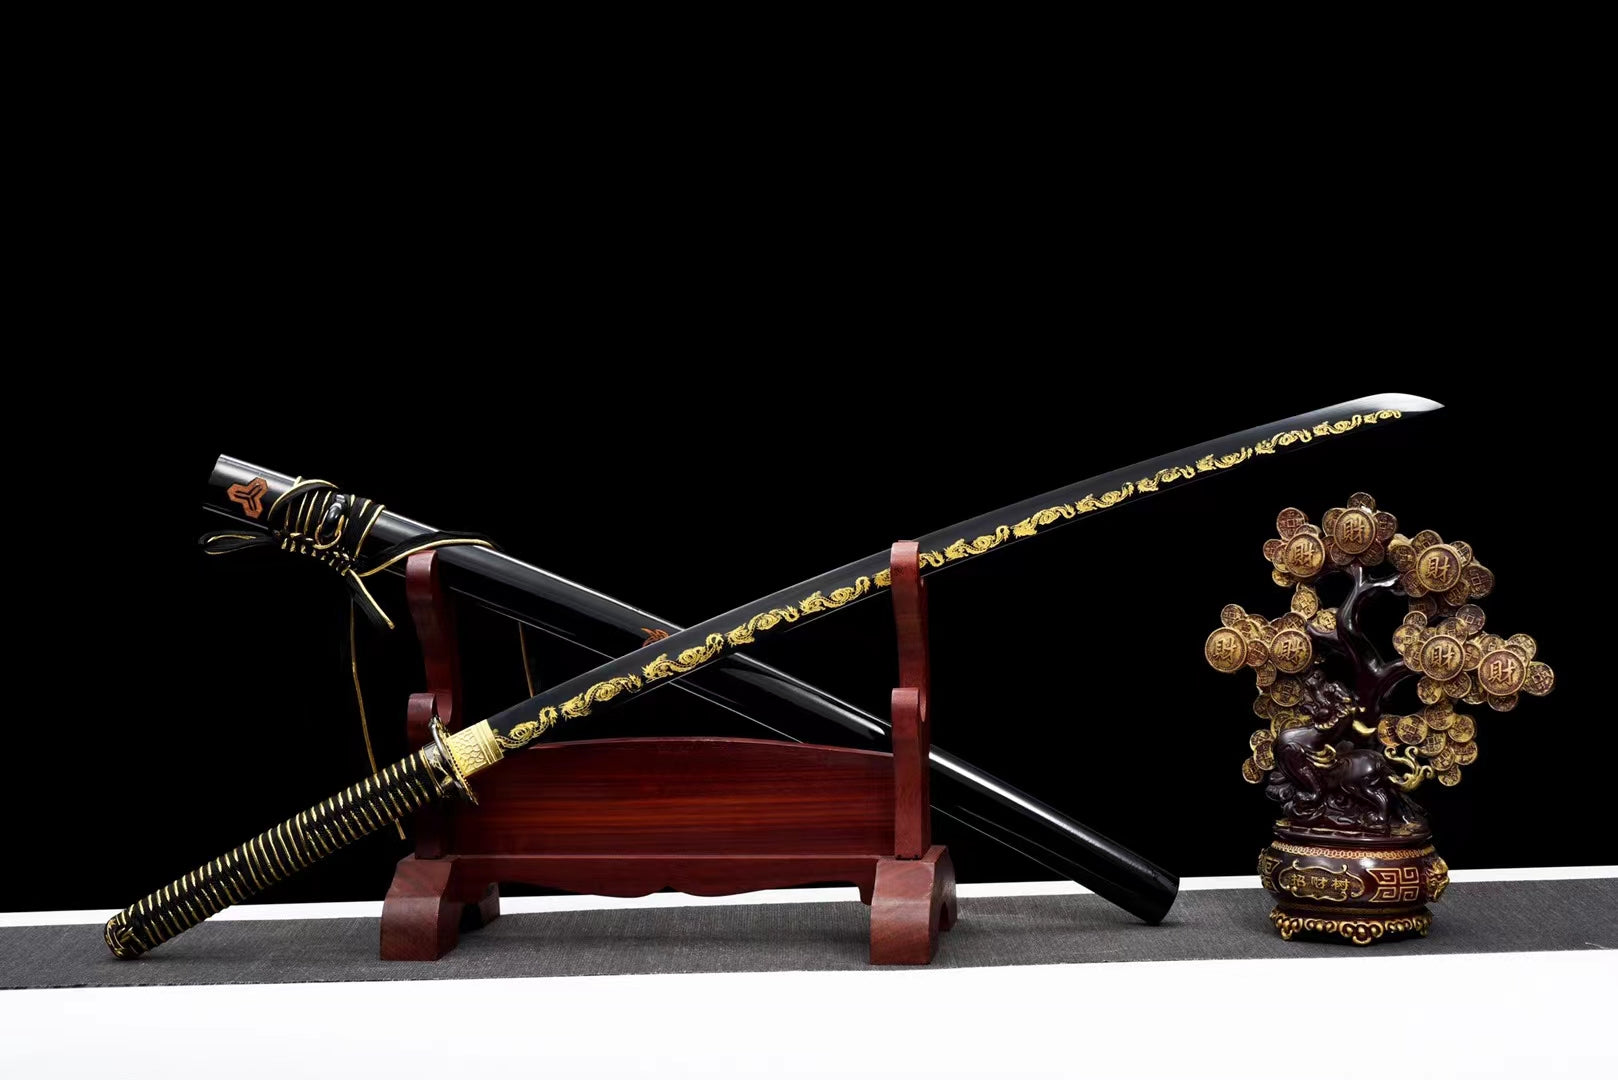 1045 carbon steel Japanese katana, carved dragon katana, black katana hansi sword